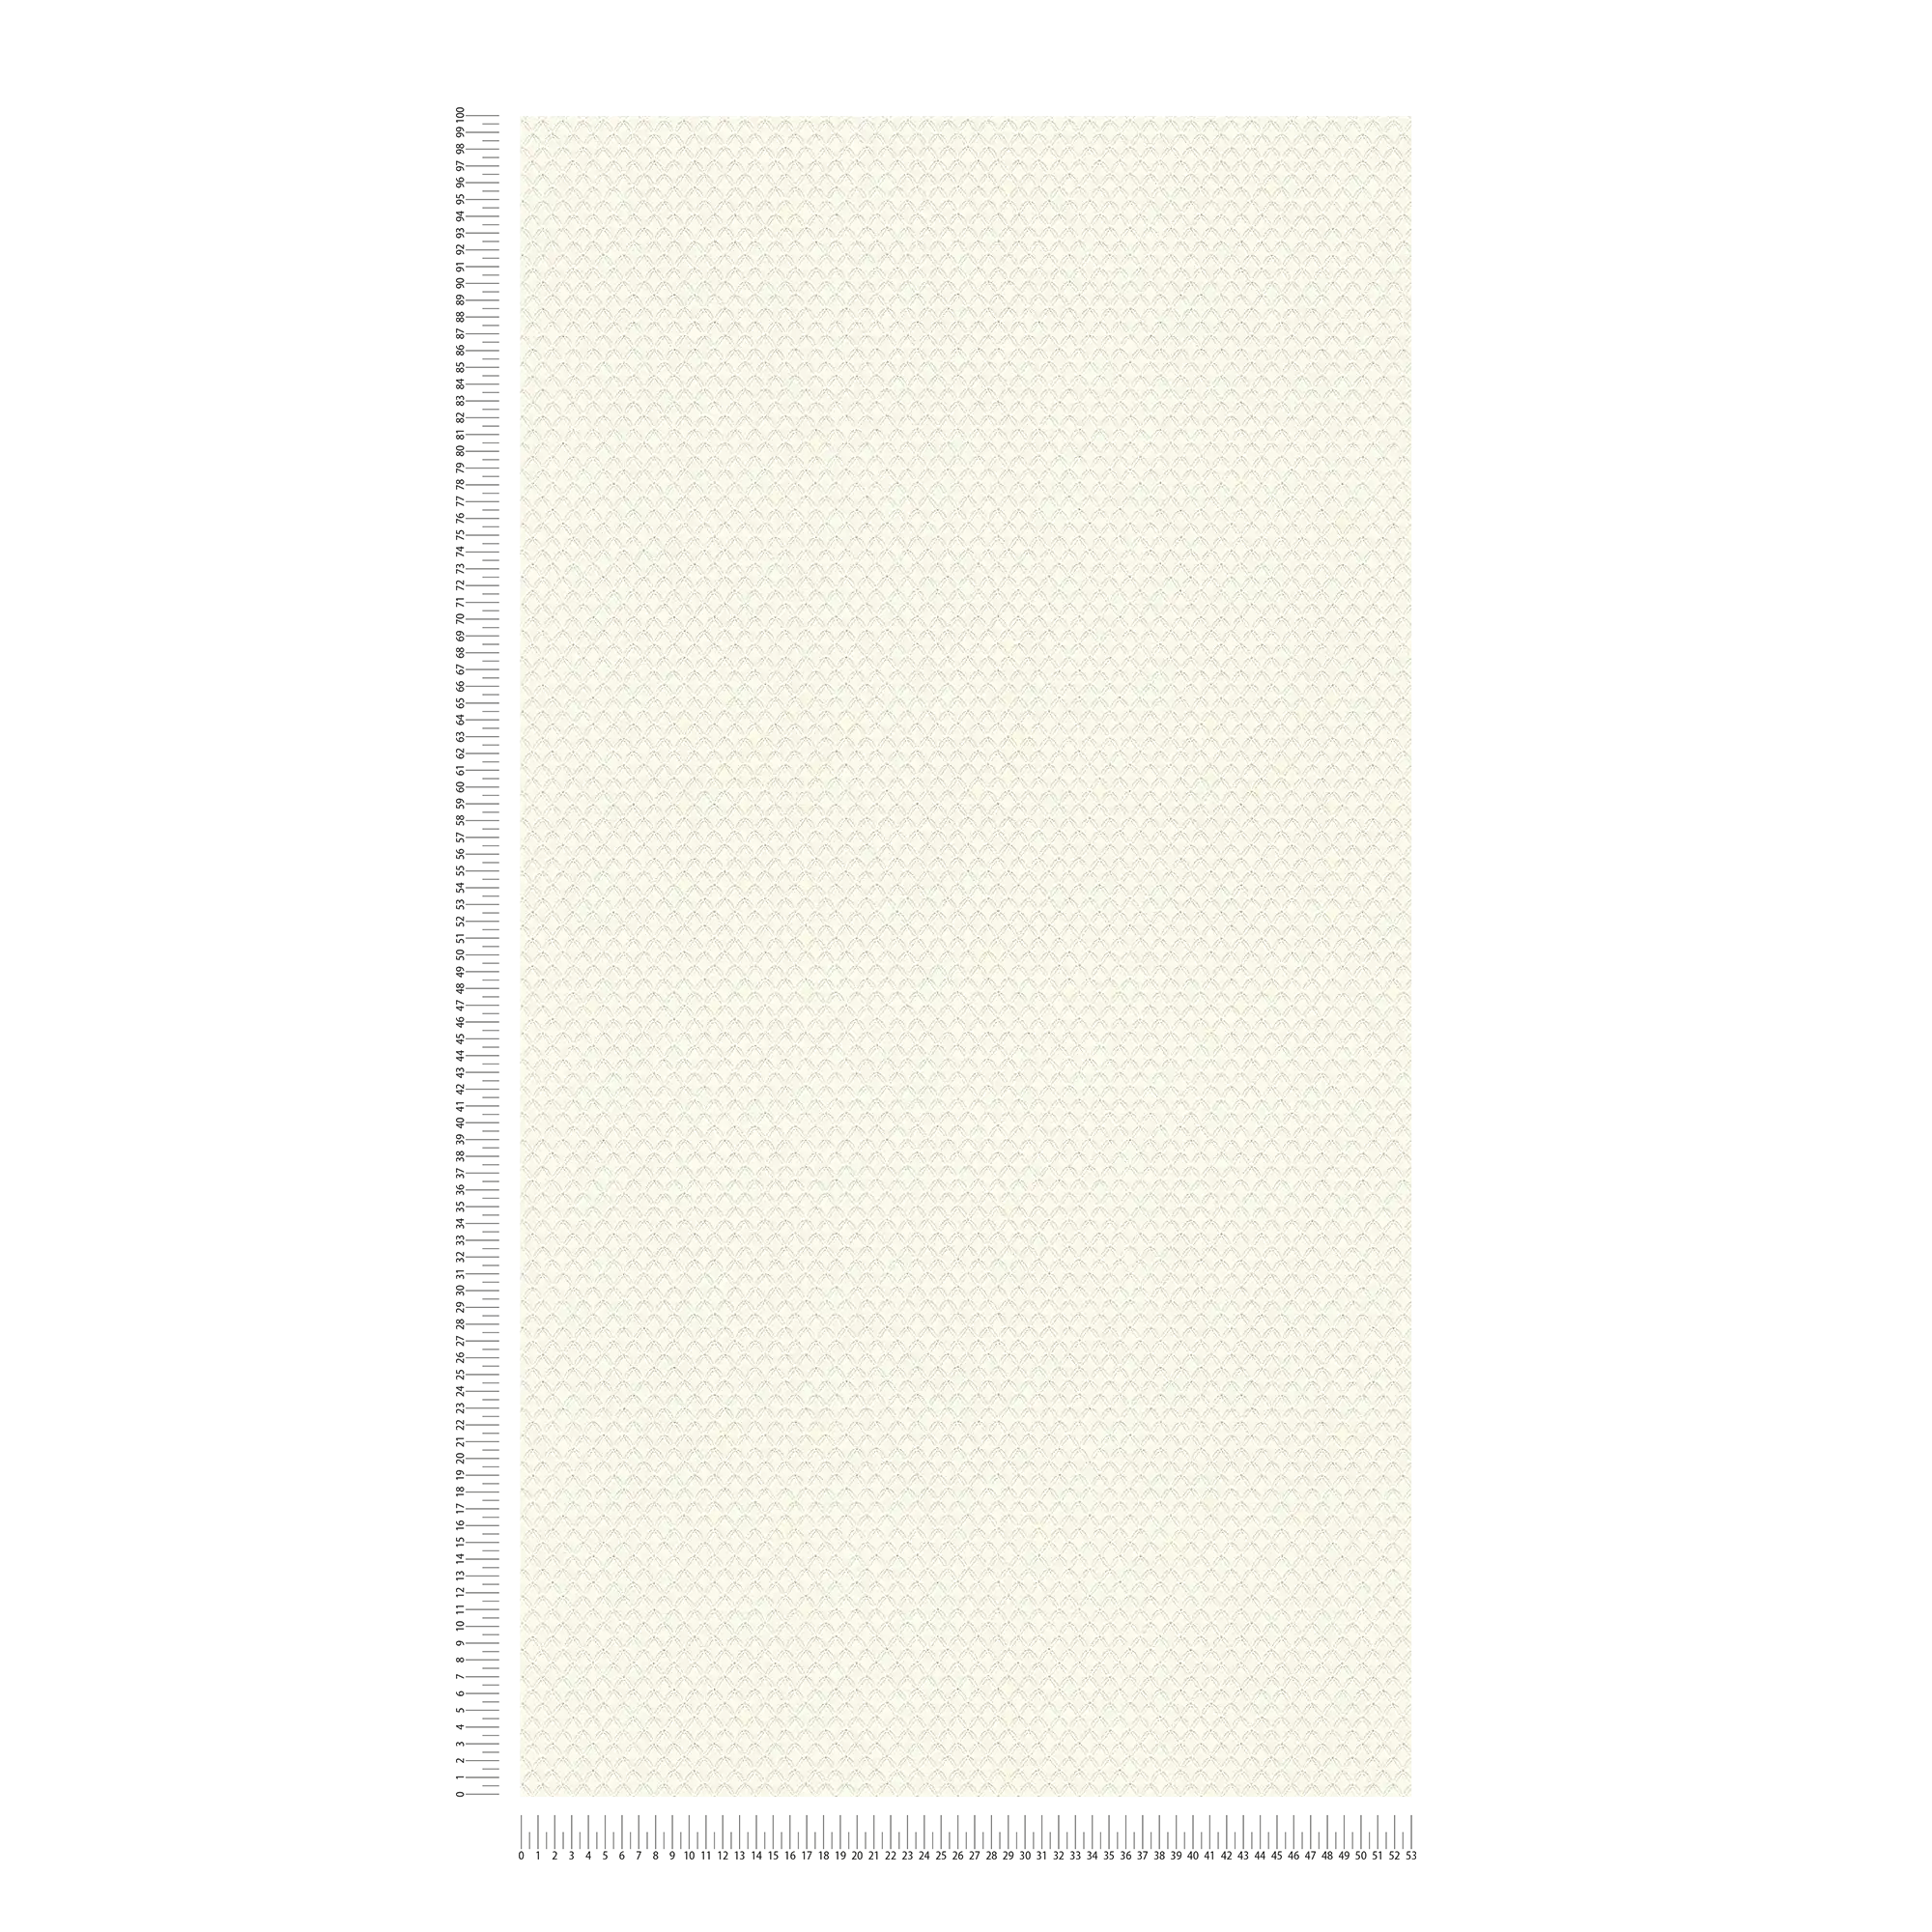             Carta da parati glitterata con struttura a rombi chiari - bianco
        